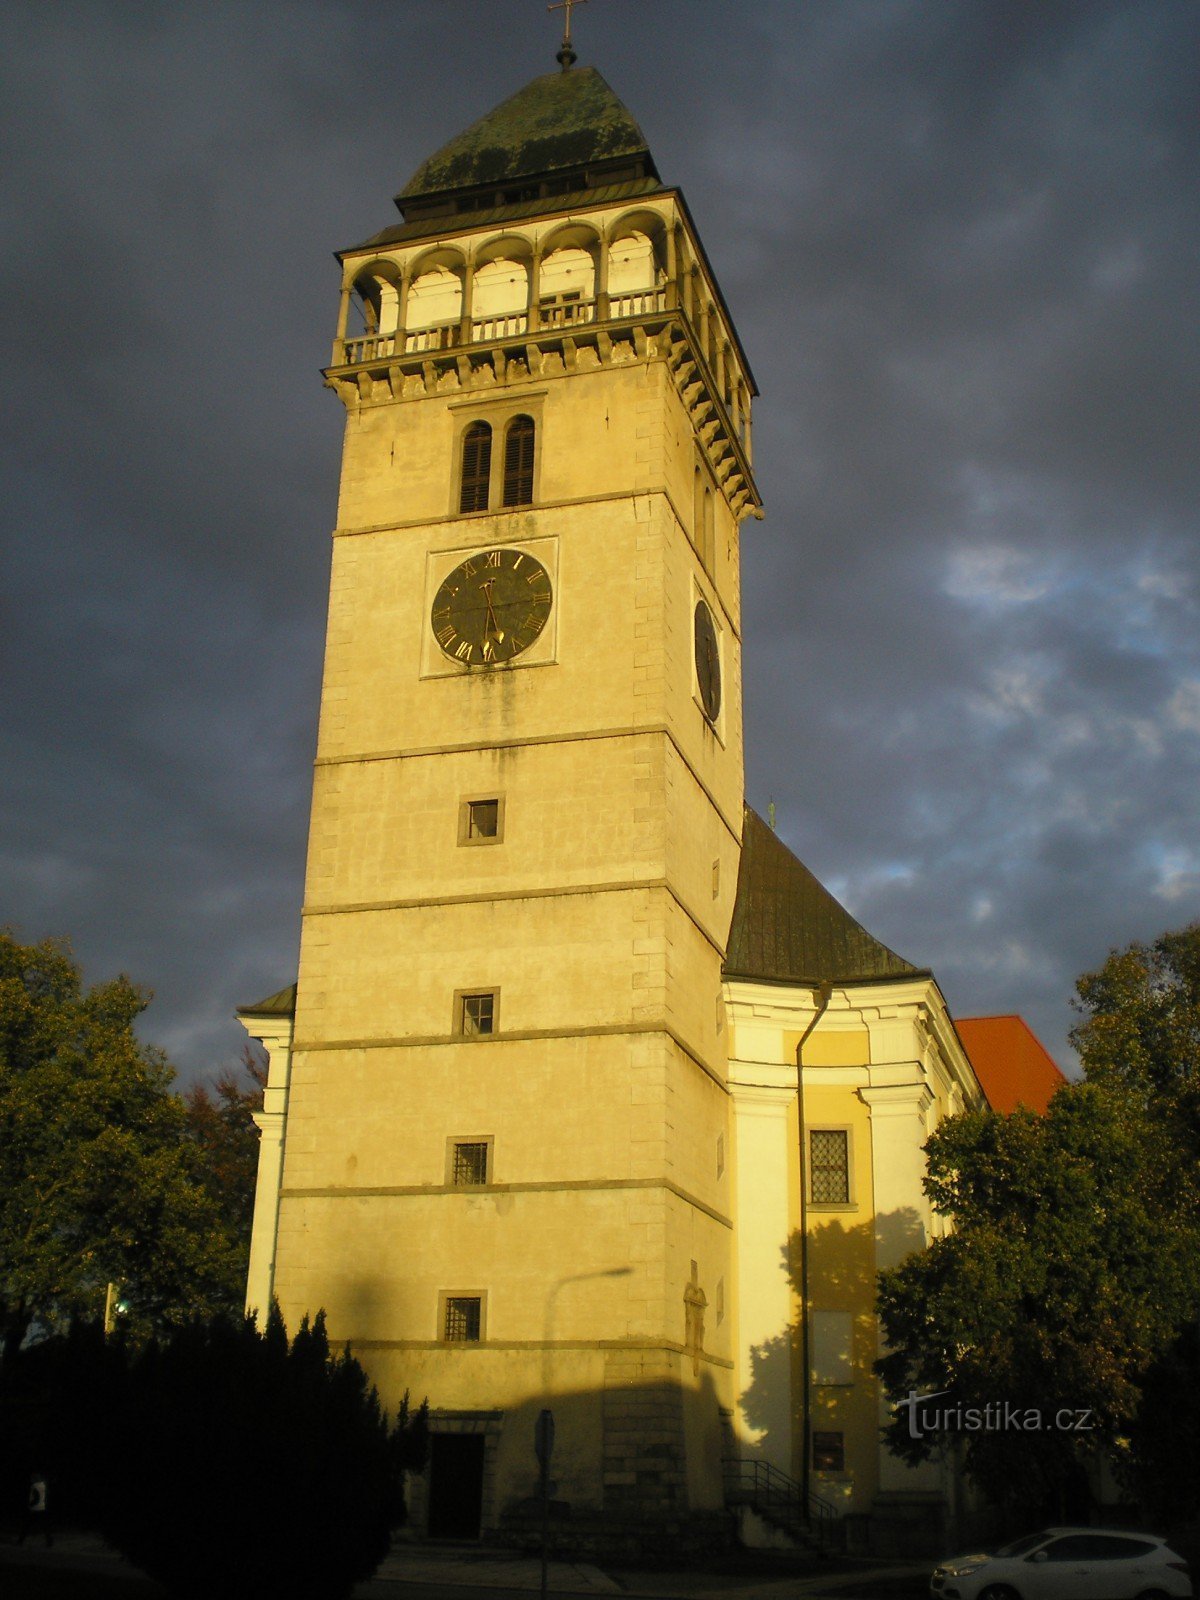 Dačice - Tháp Phục hưng